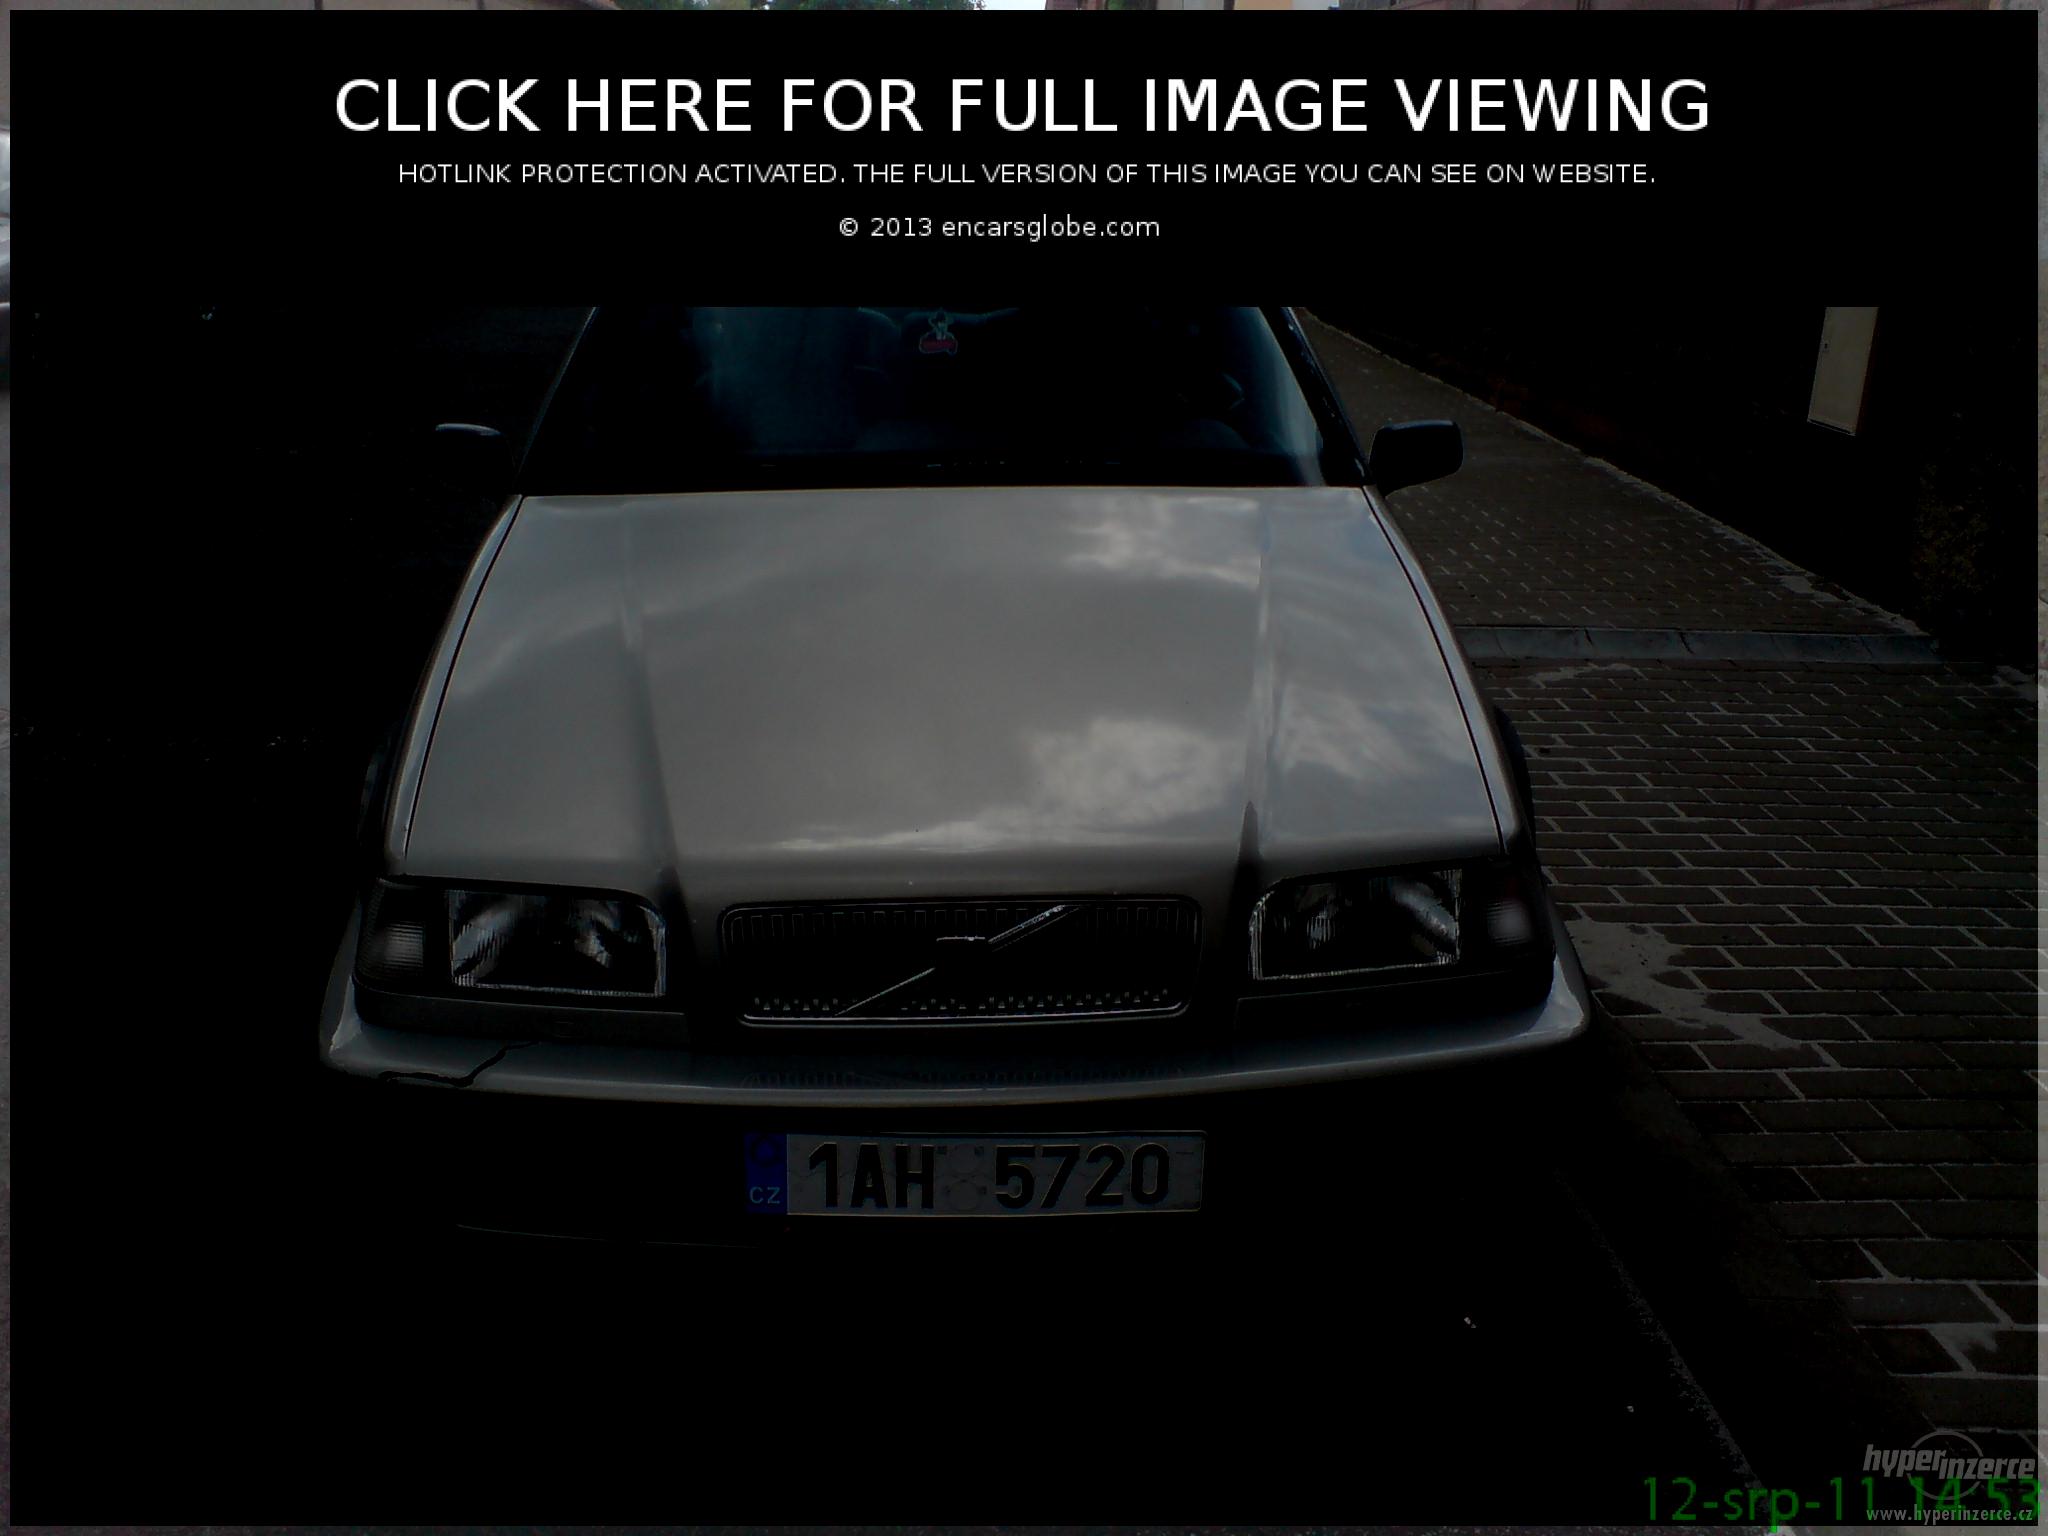 Volvo 440 16 I (Image â